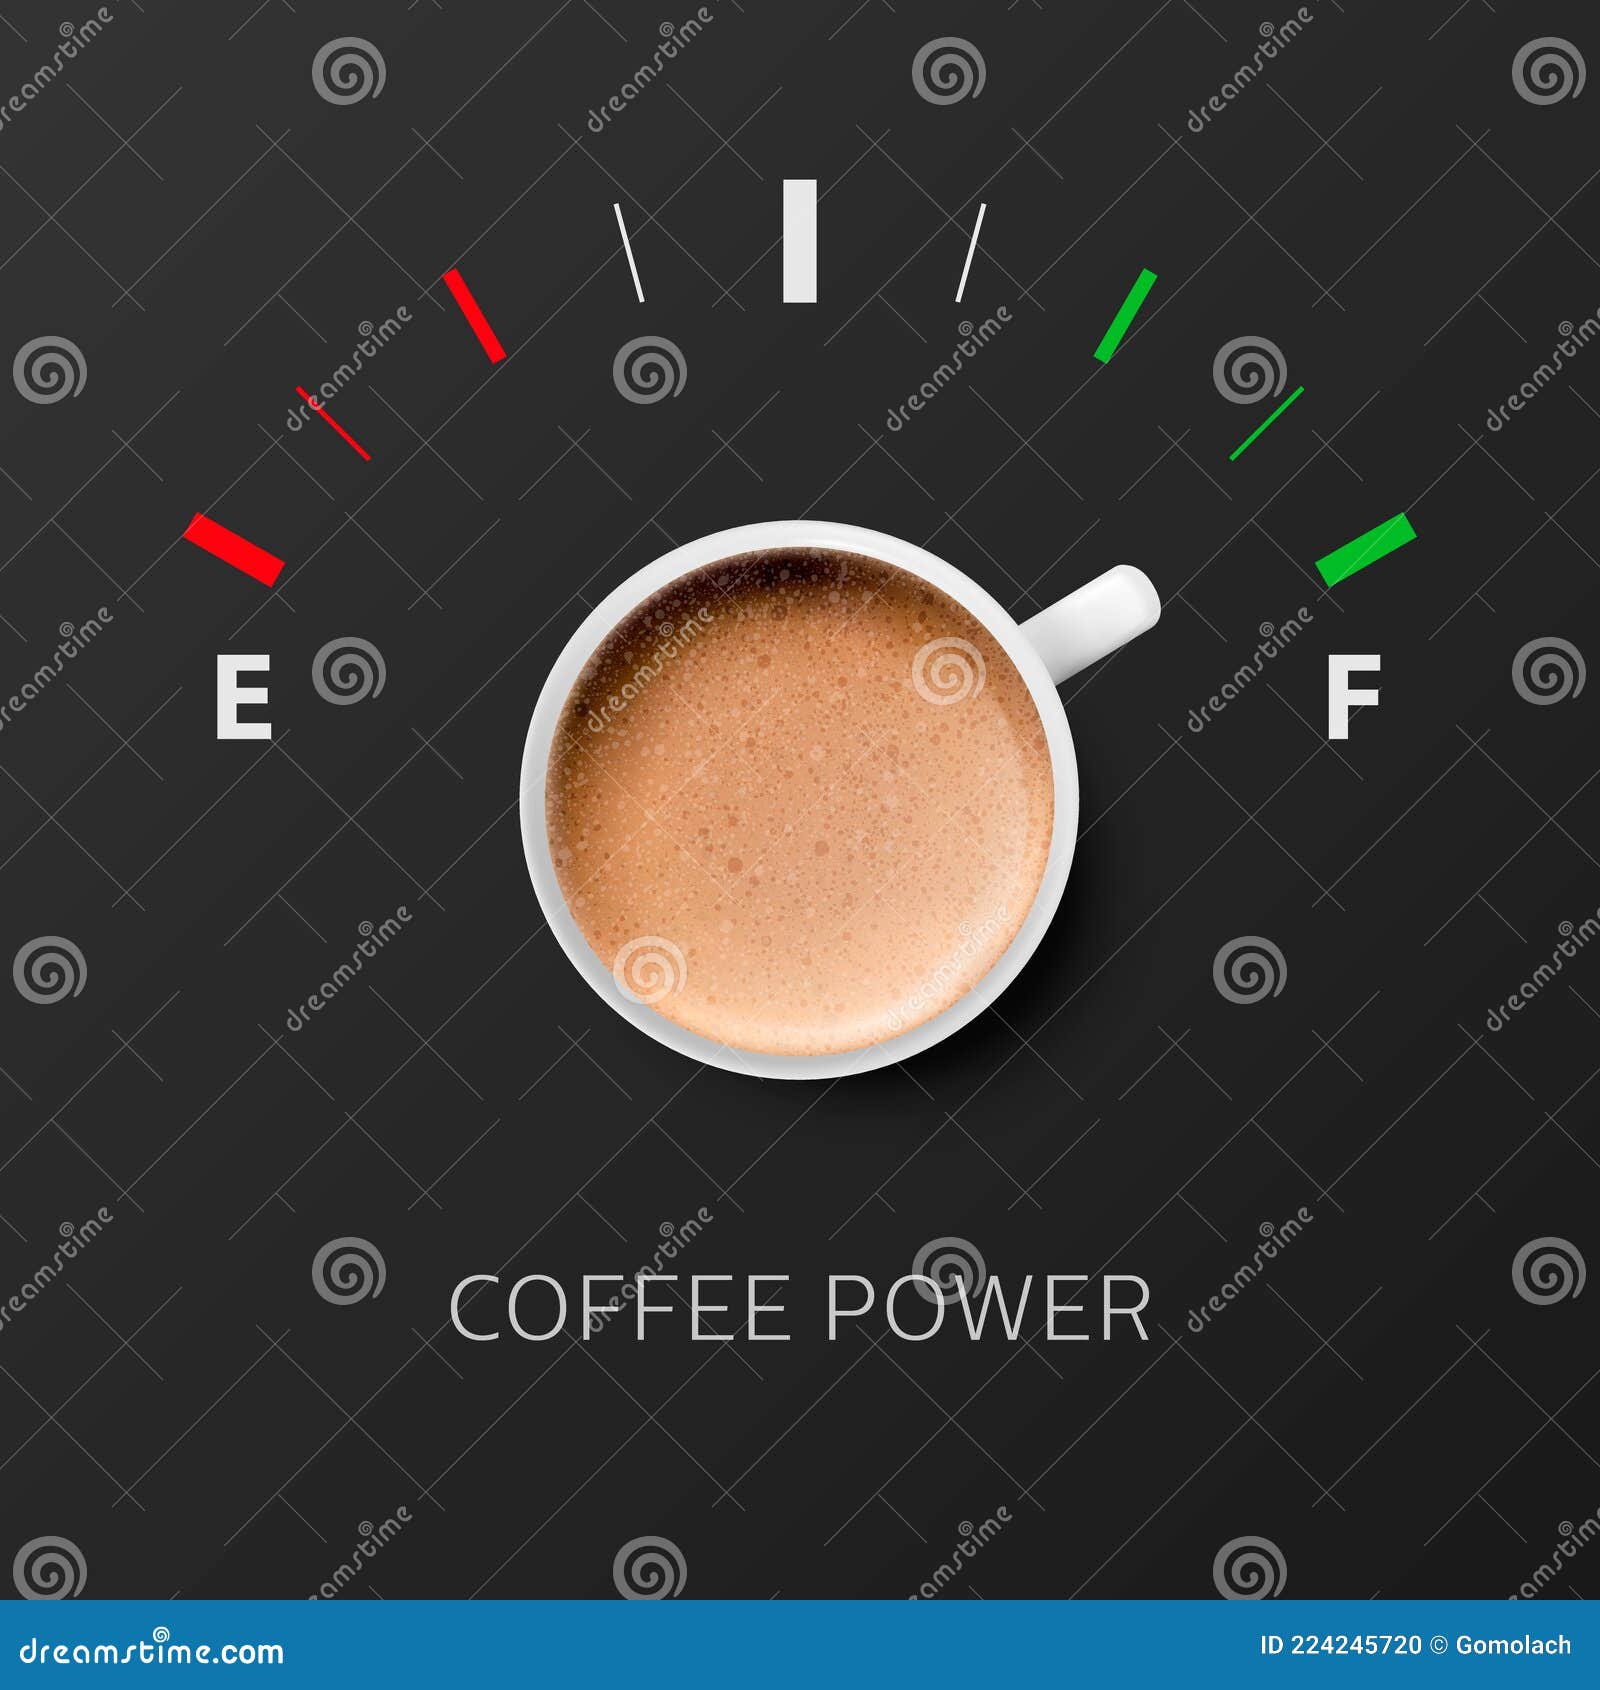 https://thumbs.dreamstime.com/z/kaffeemaschine-vektor-d-realistisch-wei%C3%9Fen-becher-mit-milchschaum-kaffee-und-kraftstoff-manometer-vapuccino-latte-konzept-banner-224245720.jpg